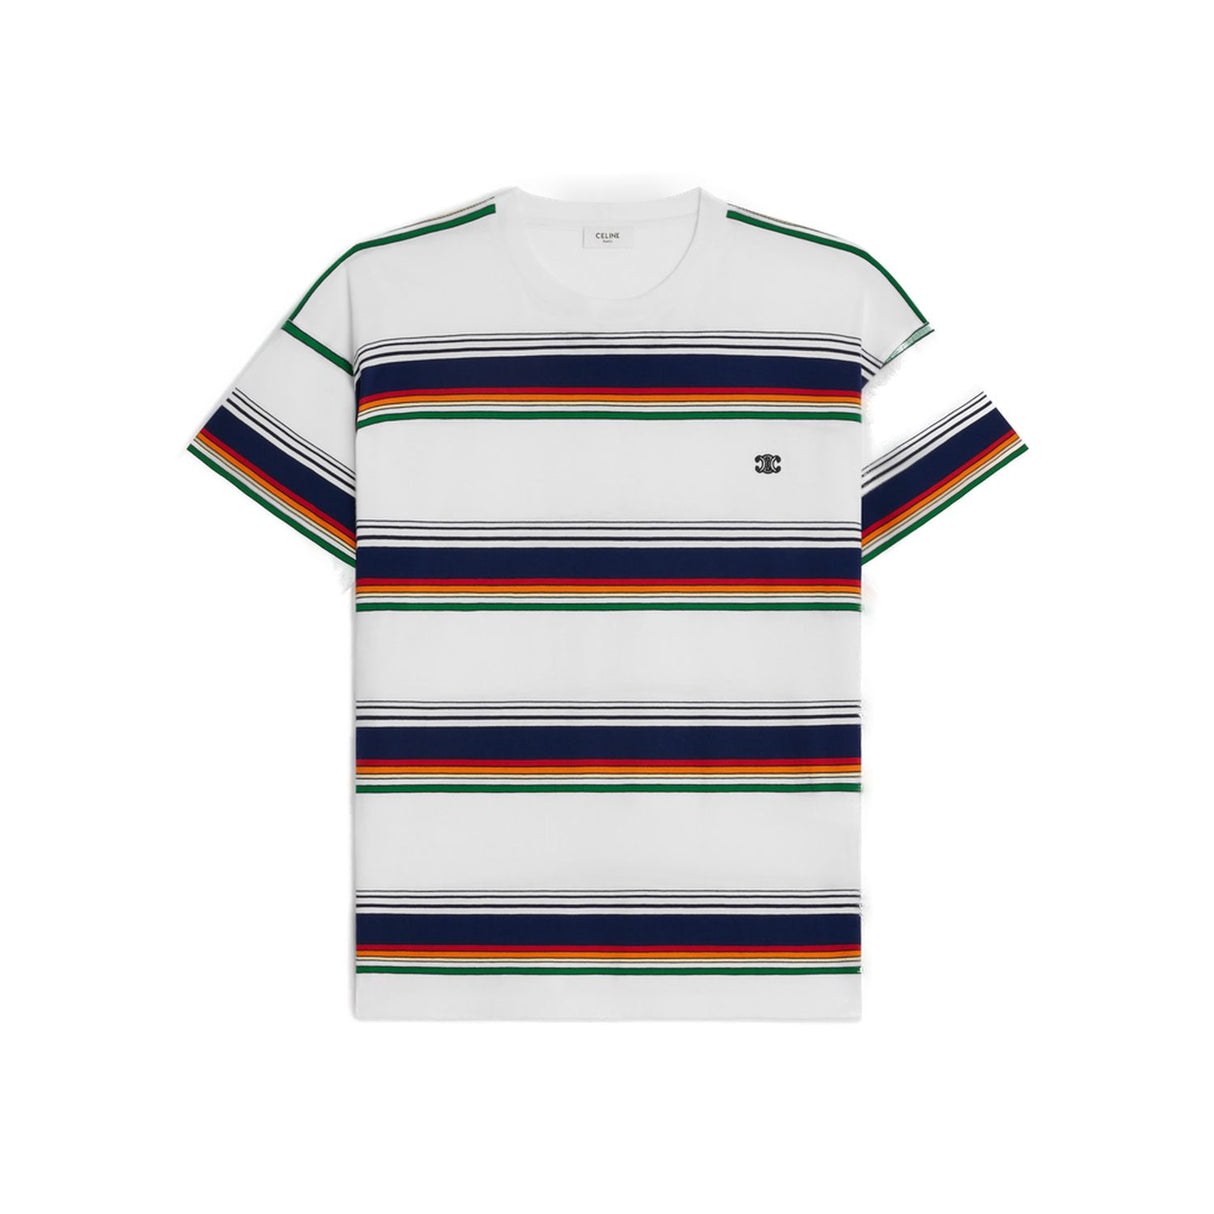 CELINE Men's Striped Triumph T-Shirt in White and Multicolor